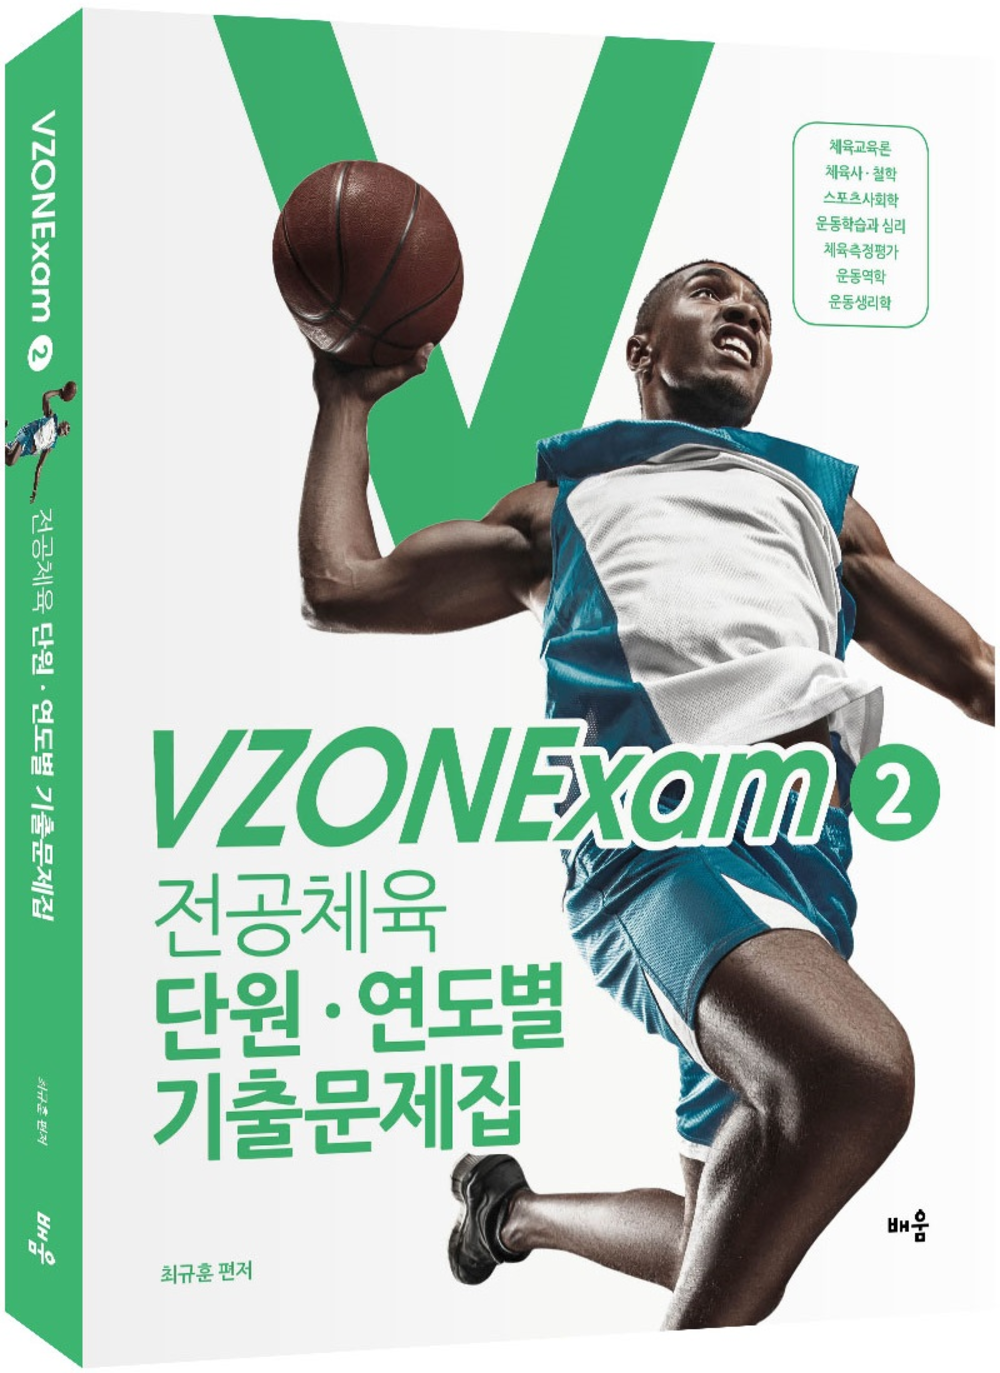 VZONExam2(연습용)